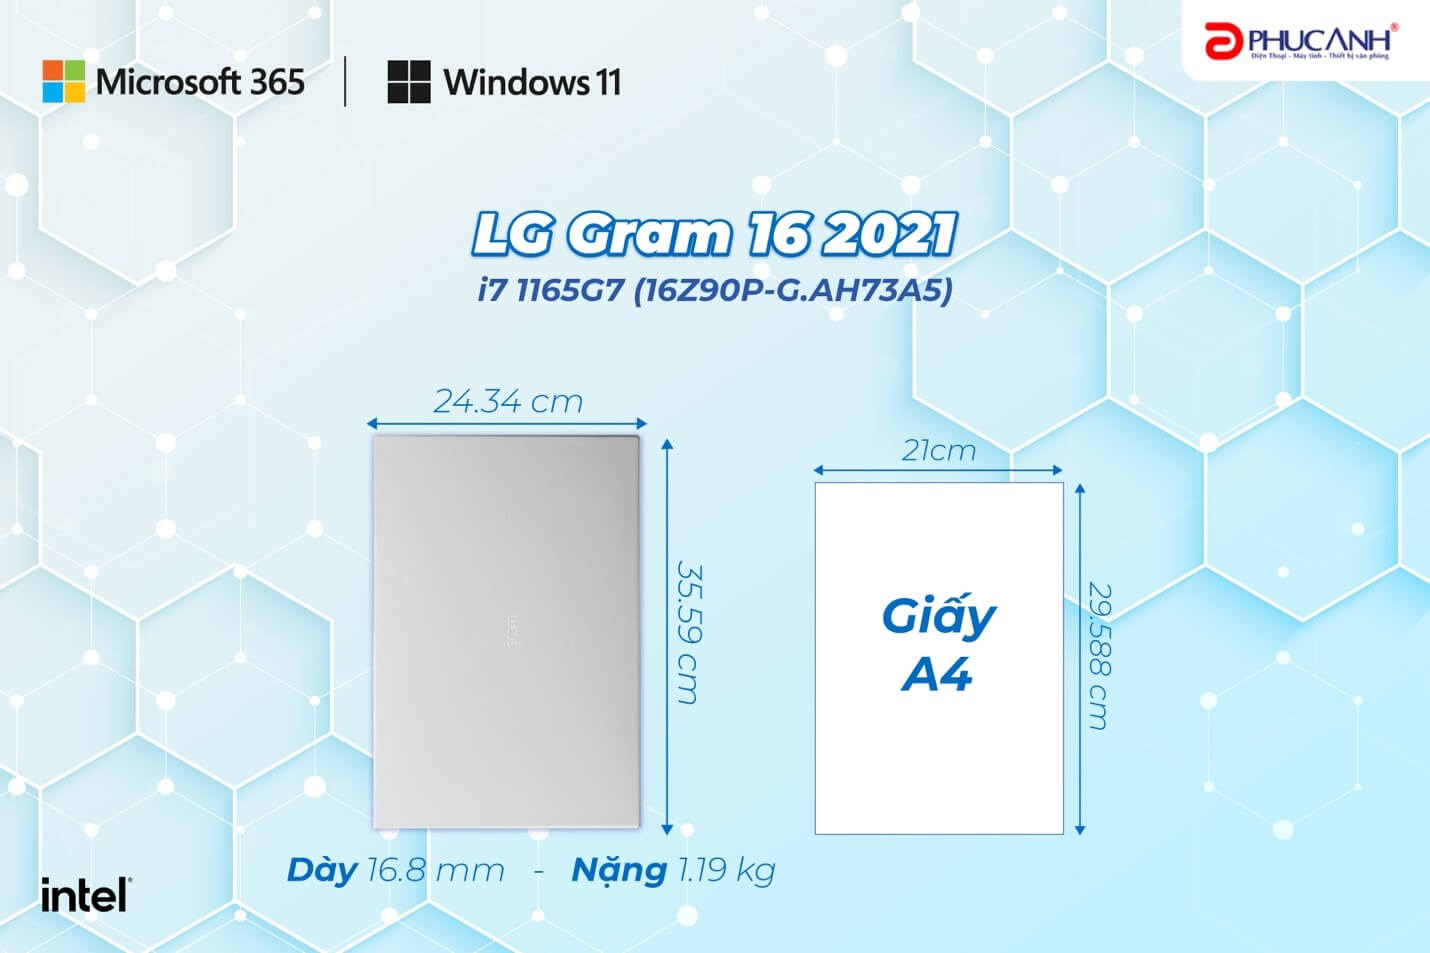 LG GRAM 16 2021 I7 1165G7